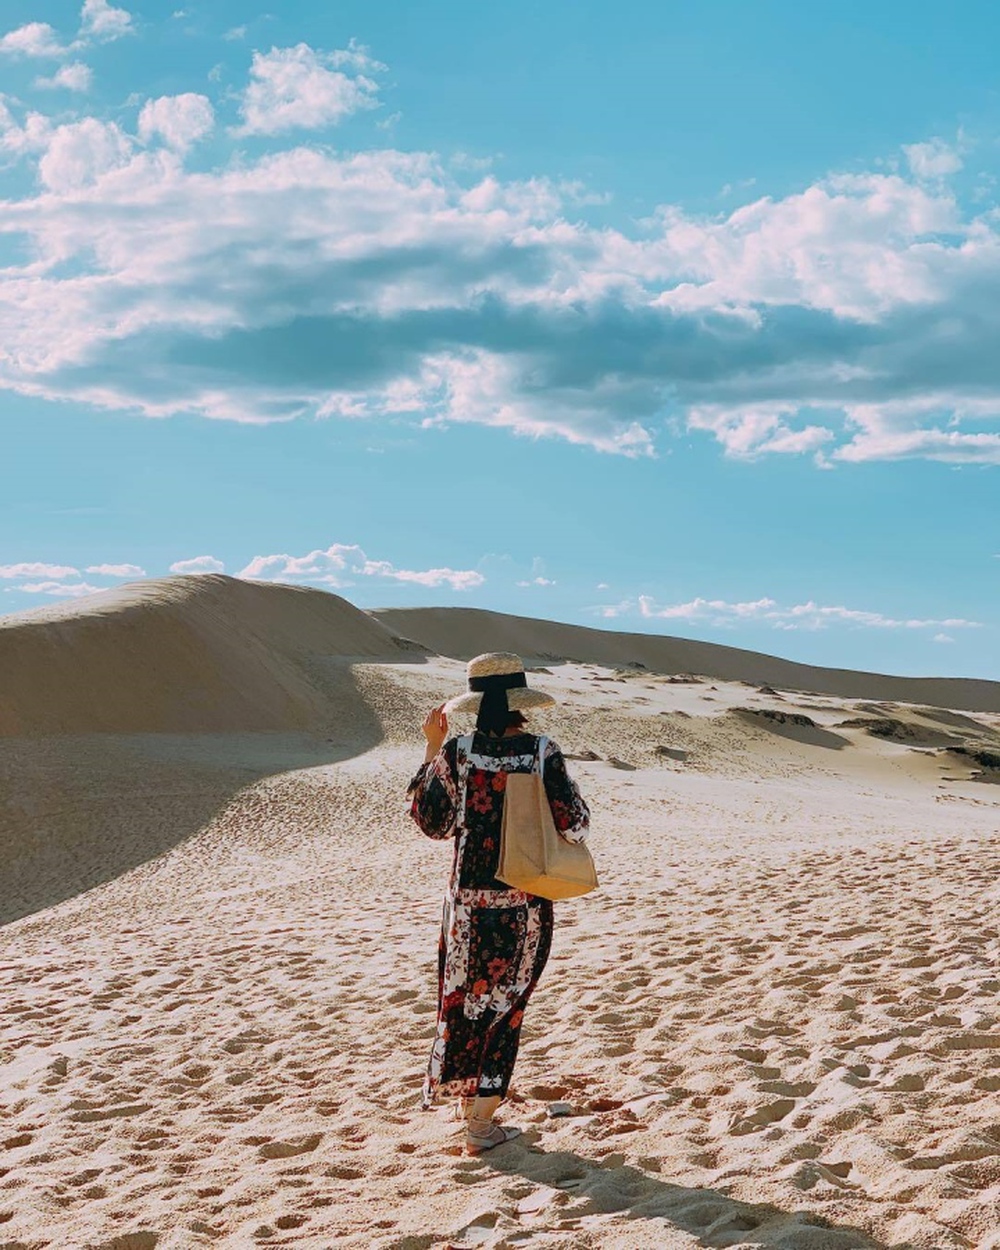 Trải nghiệm cảm giác lạc vào ‘sa mạc thu nhỏ’ với cồn cát xinh đẹp ở Quảng Bình - Ảnh 3.